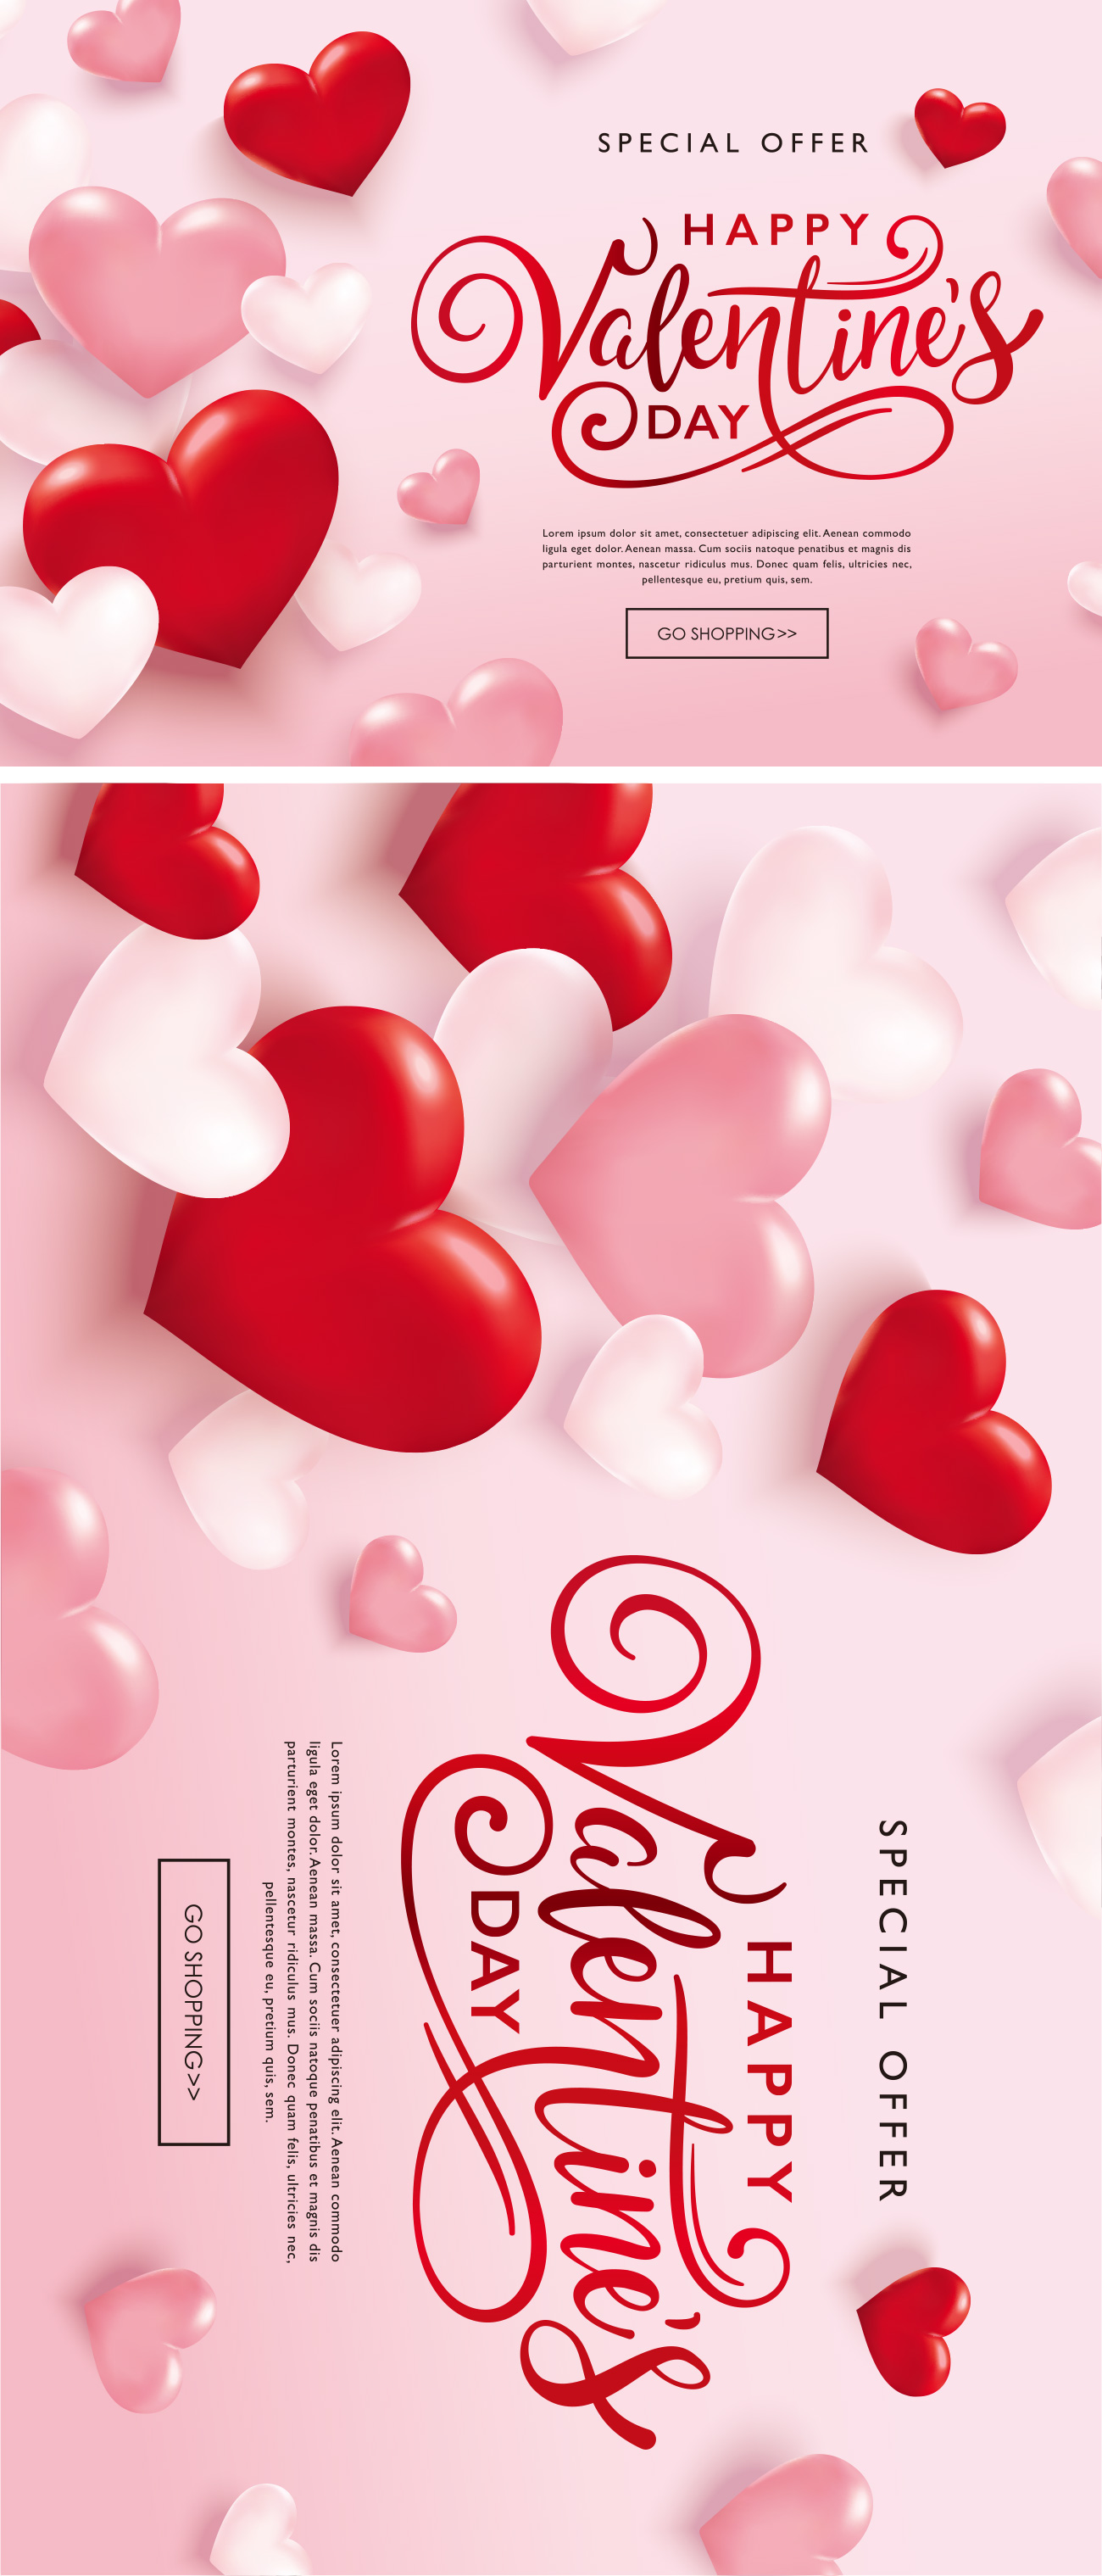 红心气球粉红系情人节/告白日/新婚季/女神节促销矢量海报素材